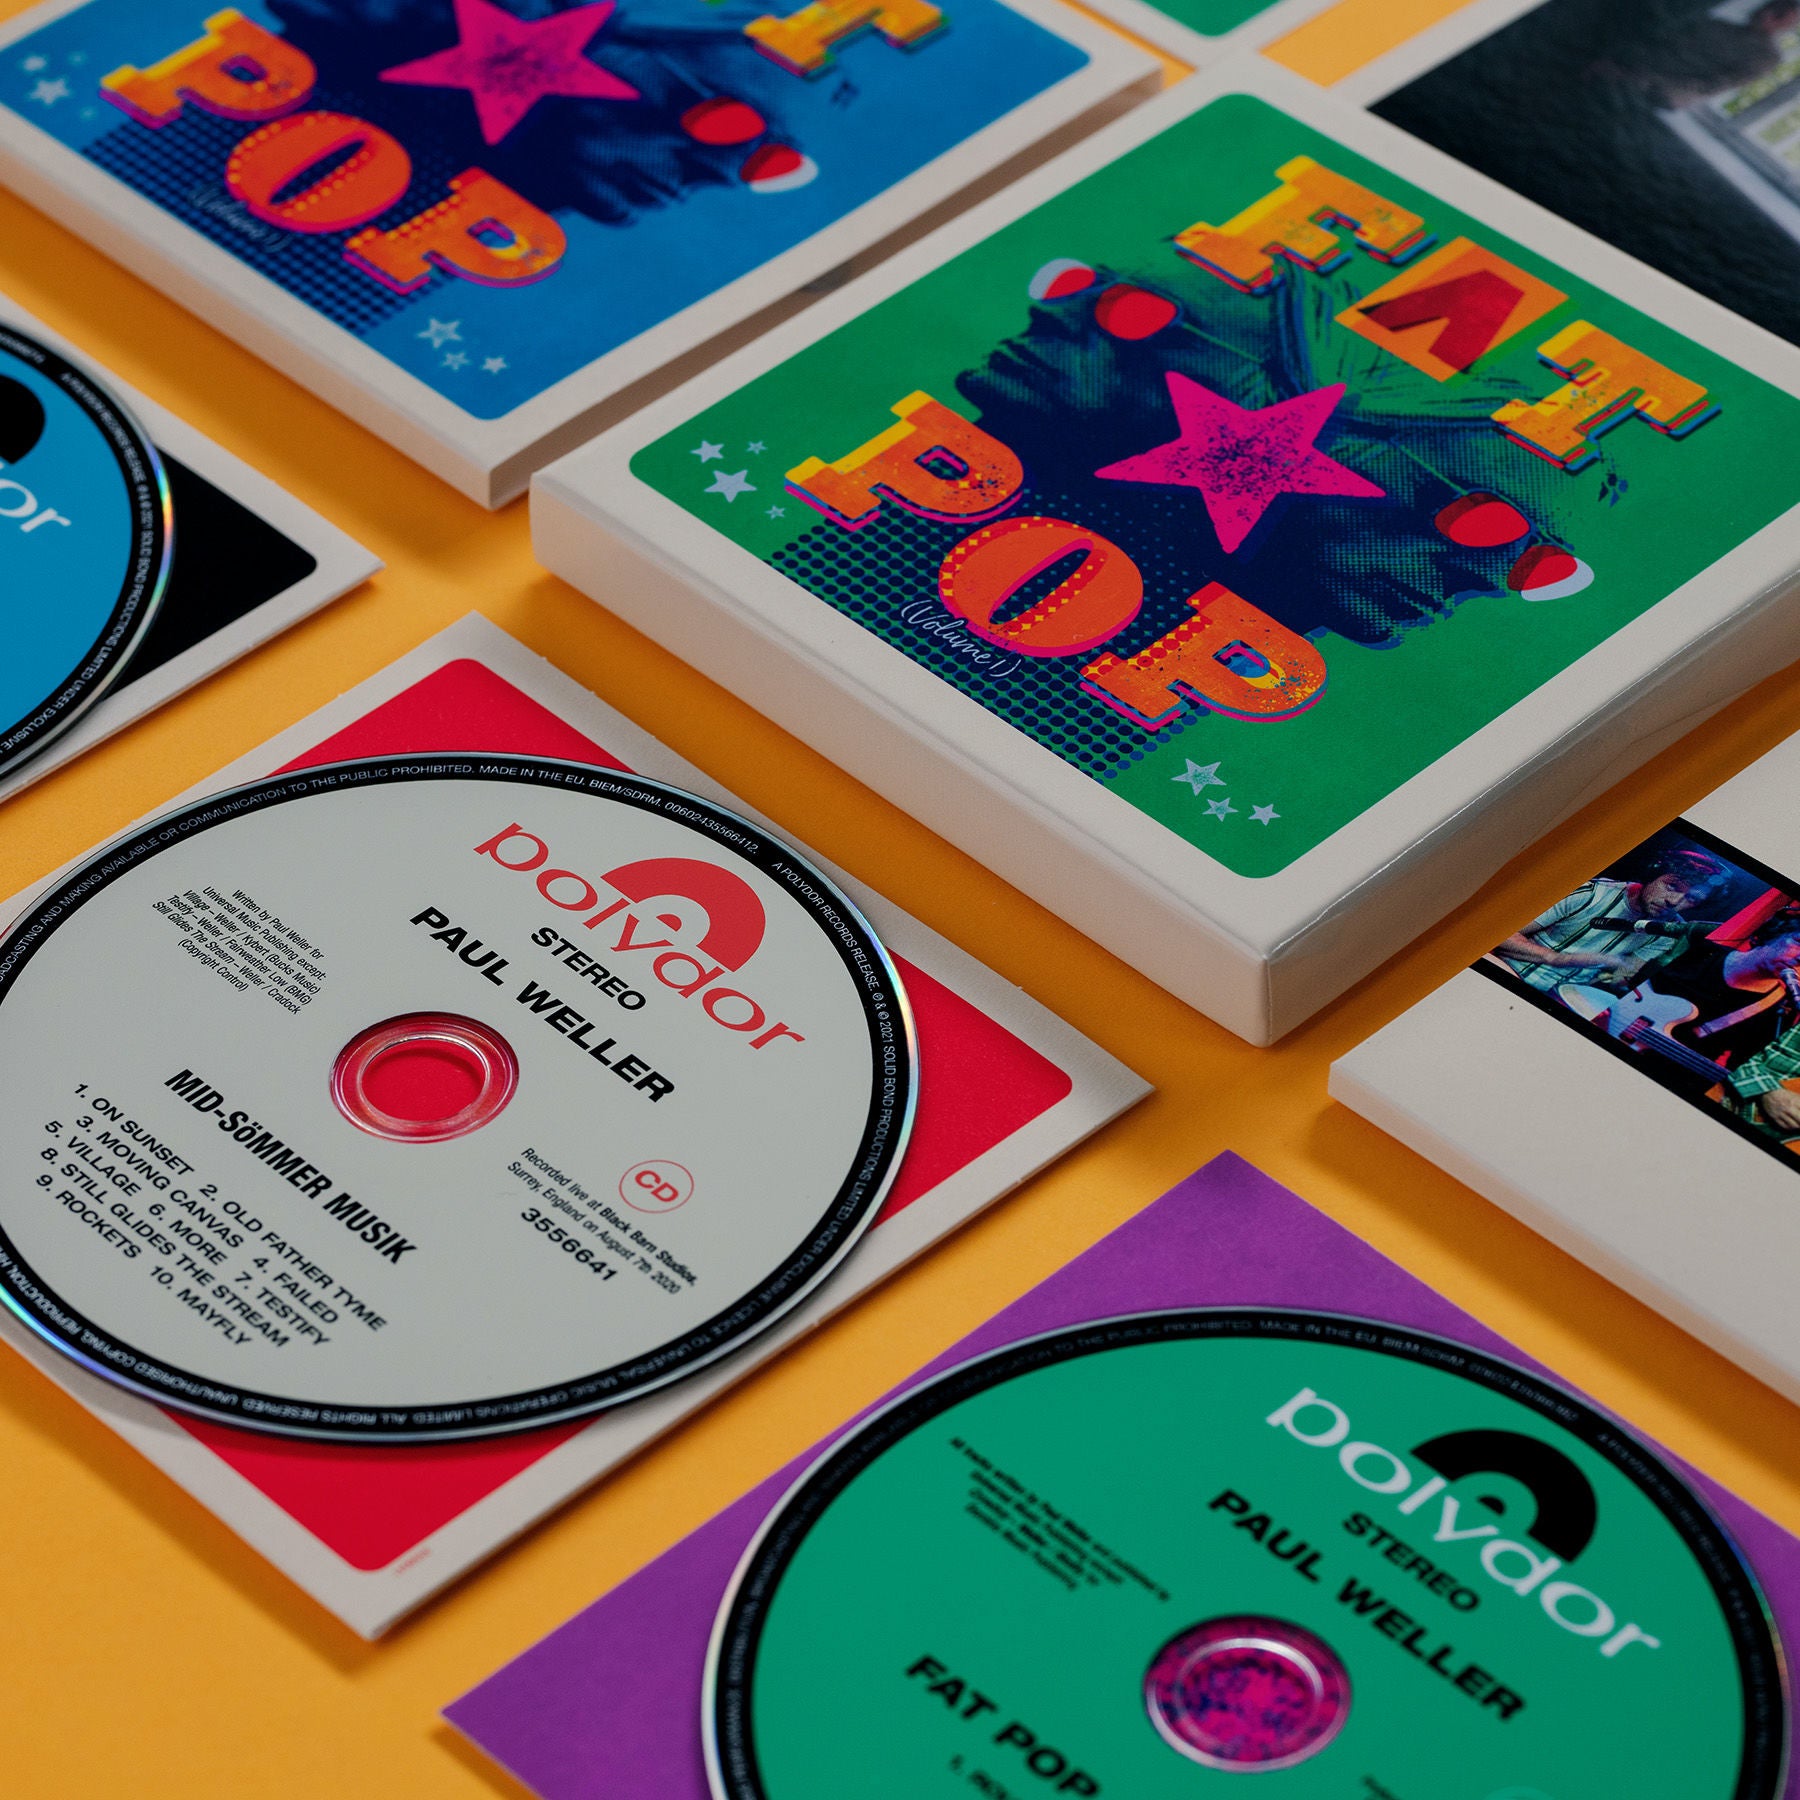 Paul Weller - Fat Pop: Deluxe CD Boxset